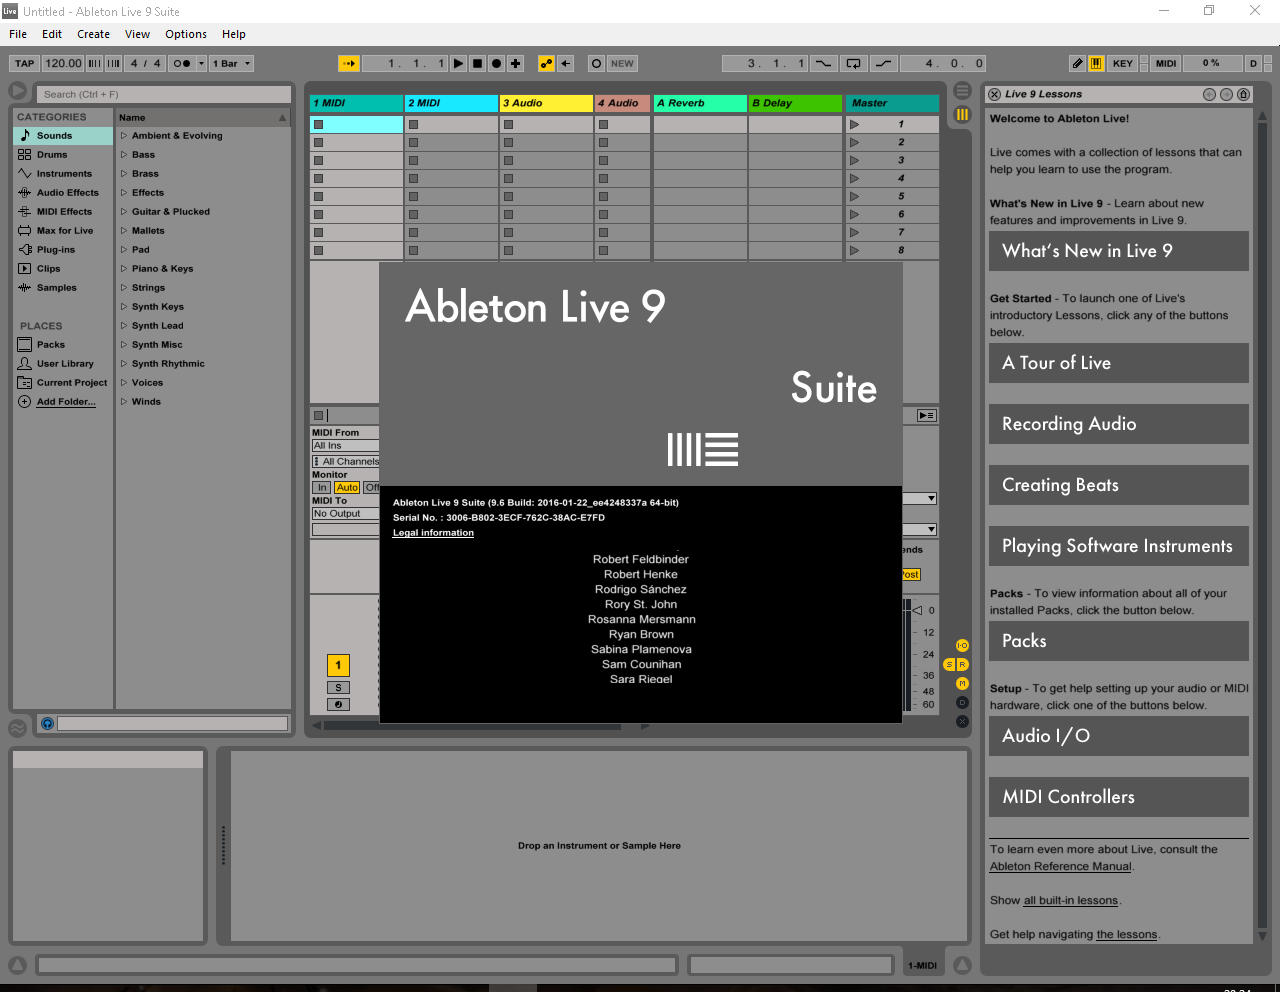 ableton live 9 suite download windows